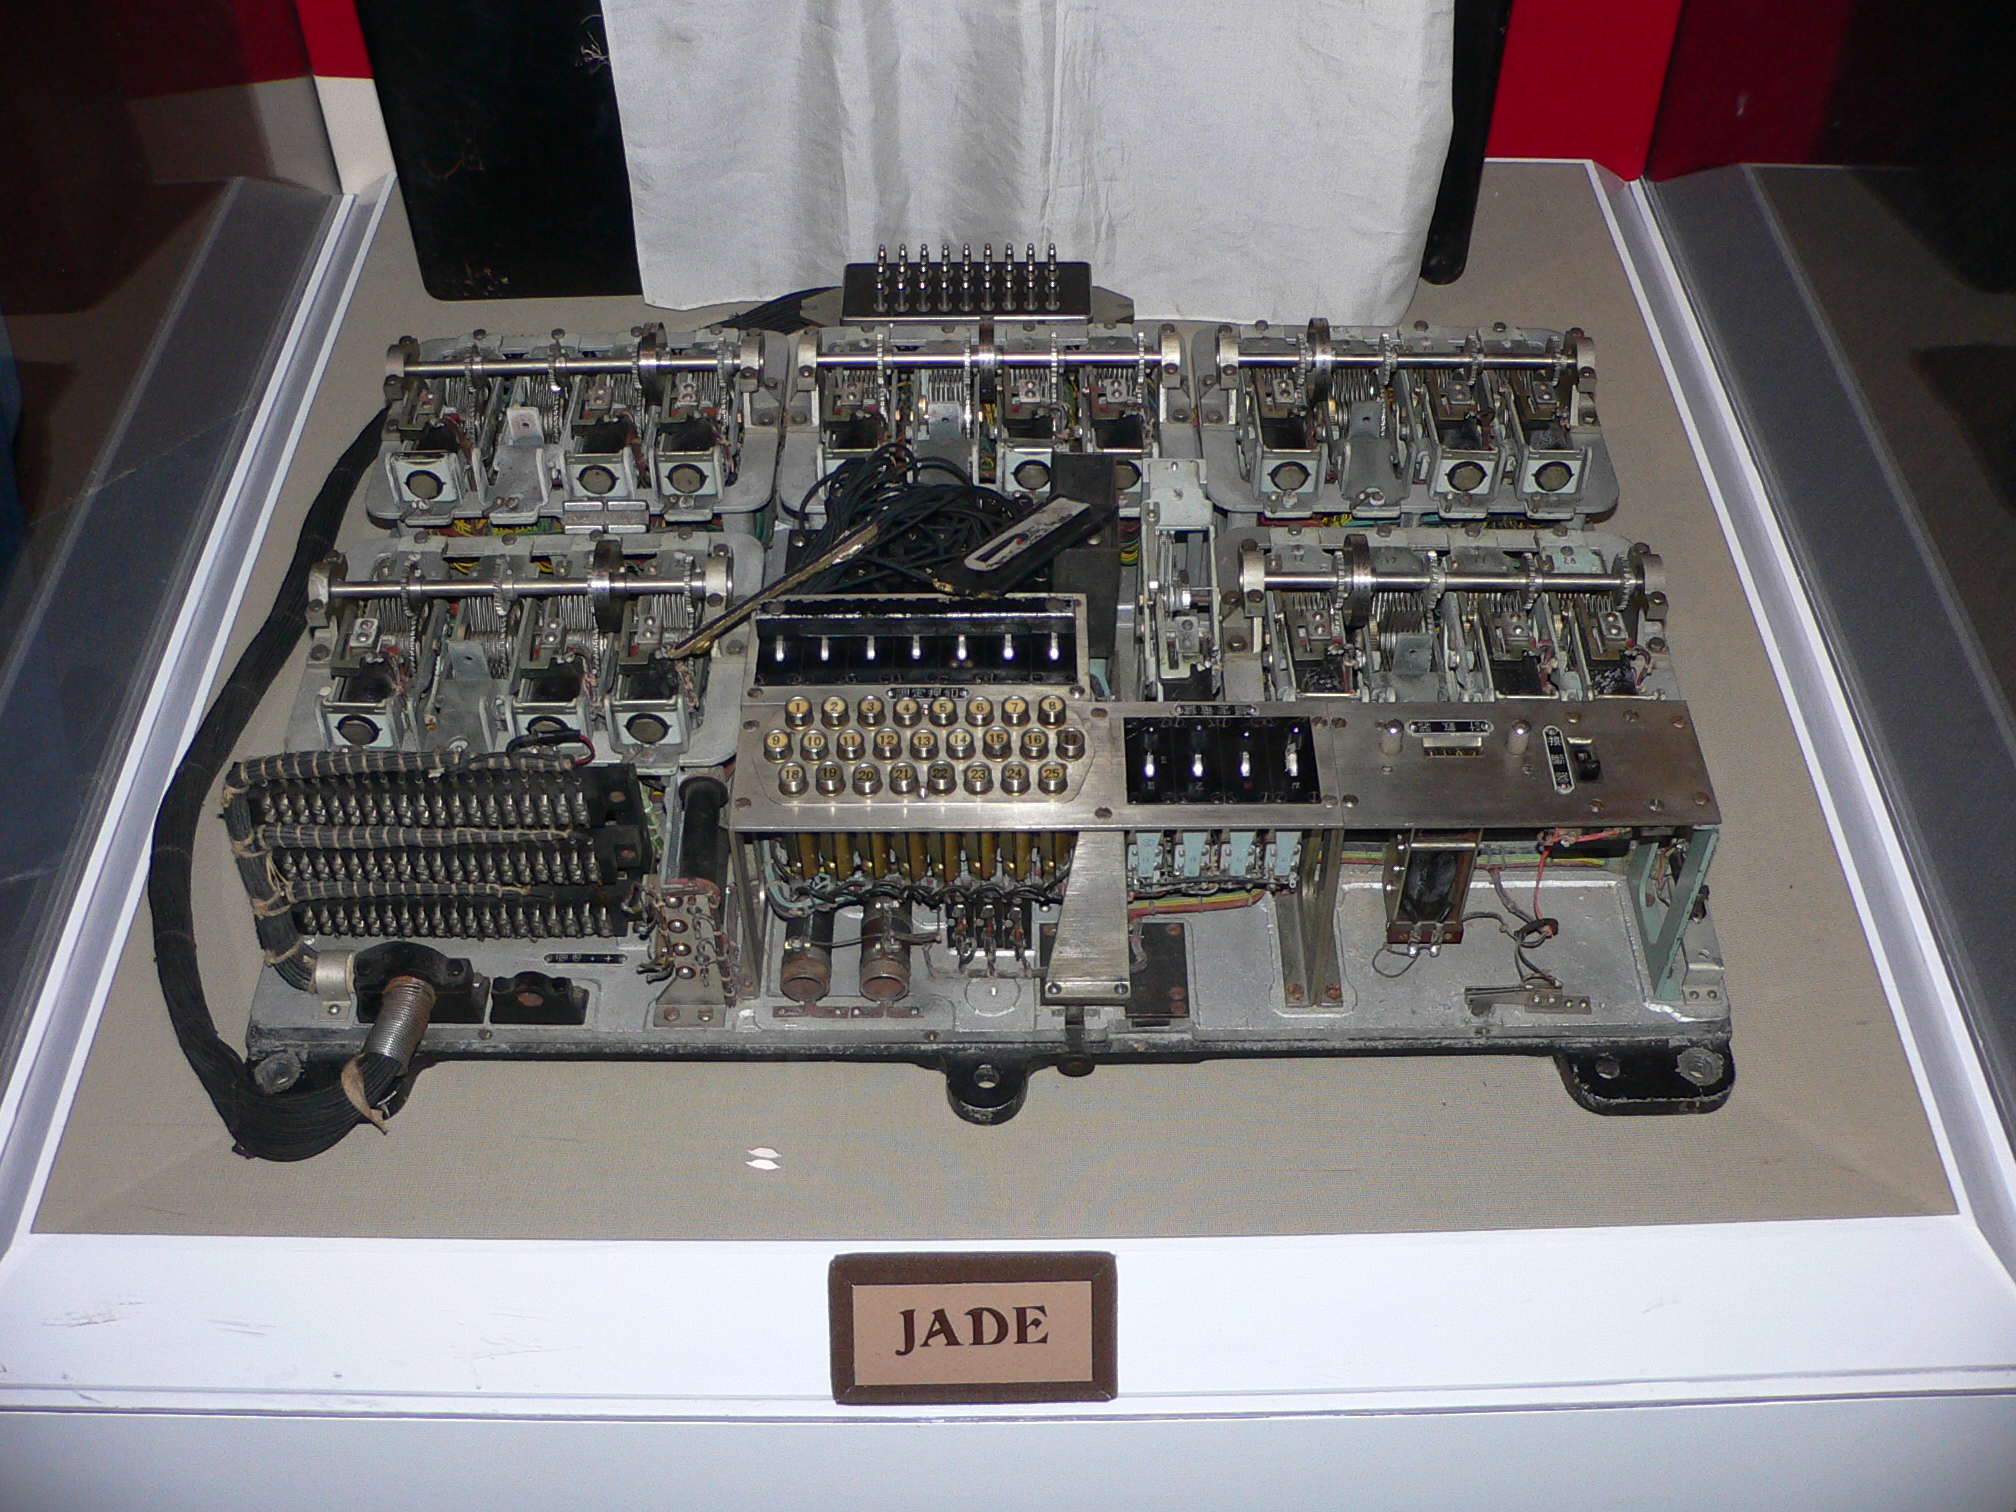 Imperial Japanse navy Jade code machine 1